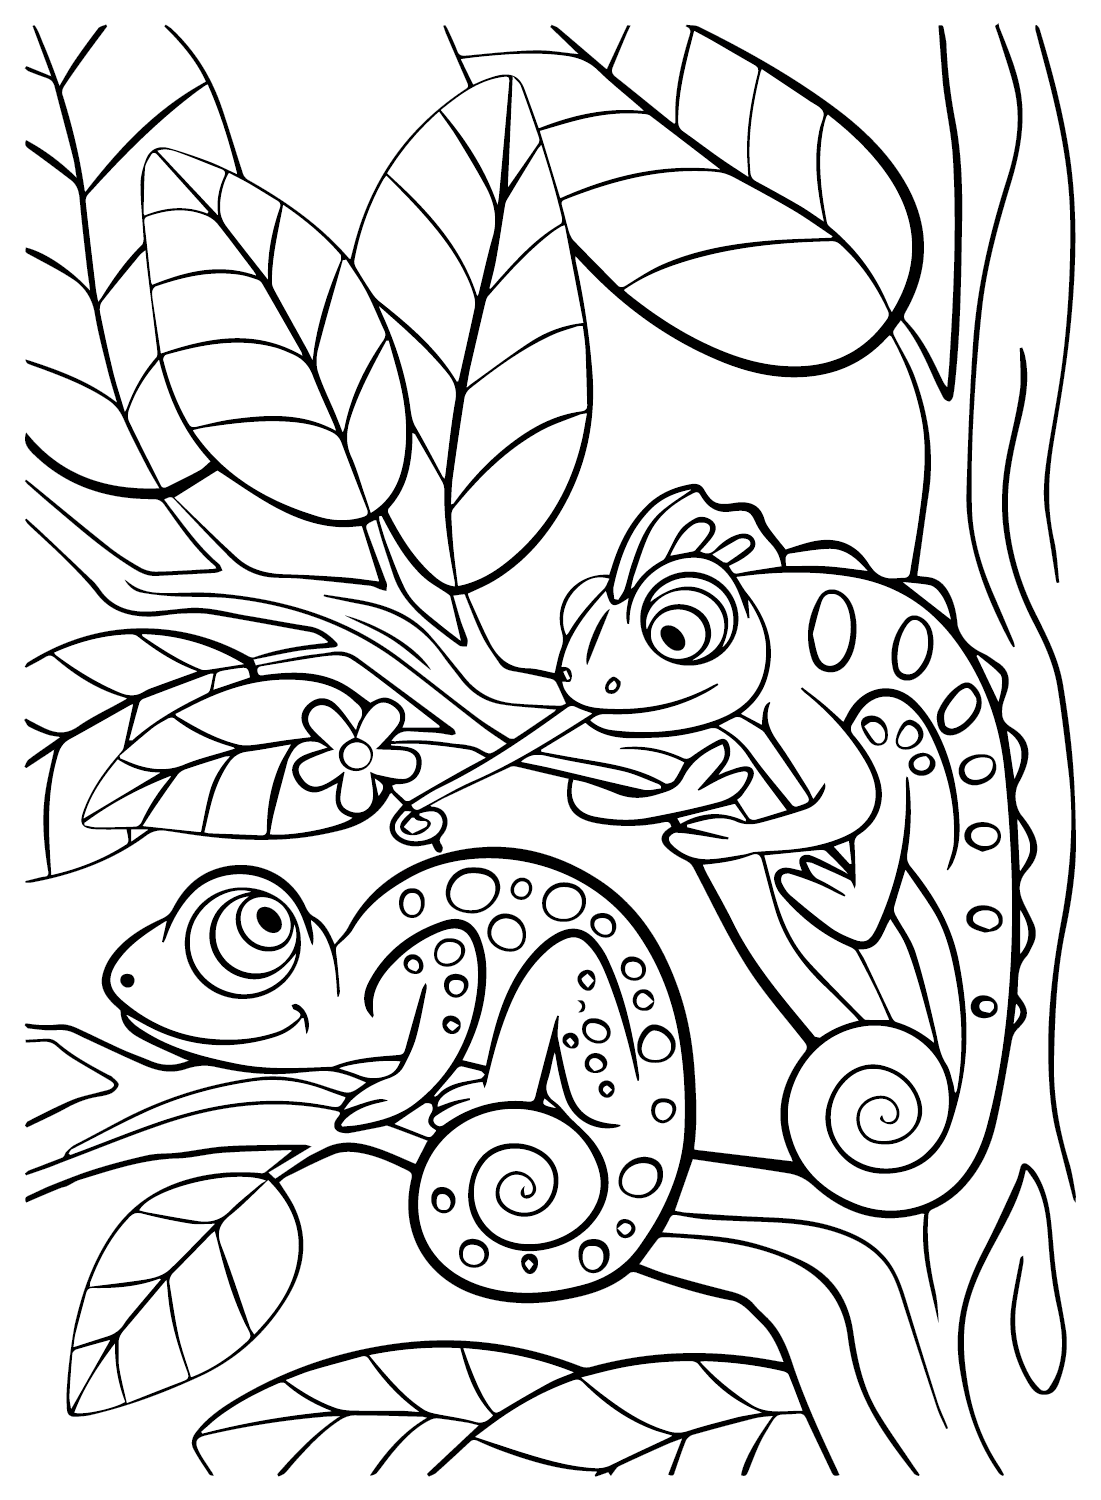 Página para colorear de imagen de camaleón de Chameleon